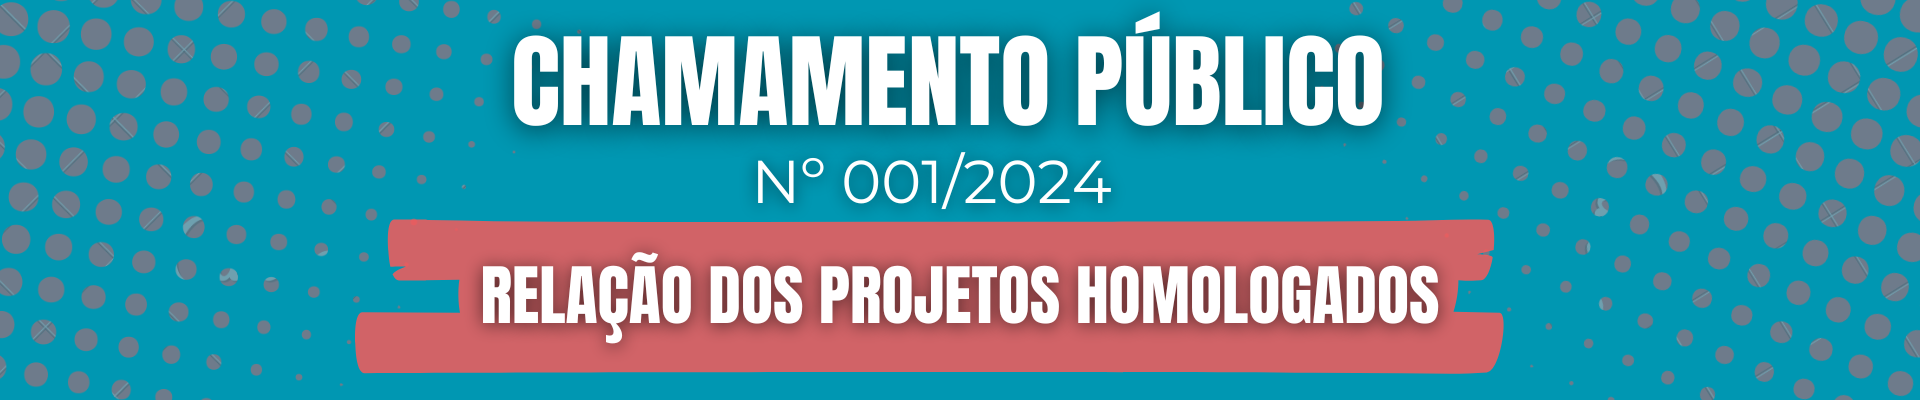 Chamamento Público 001/2024: Relação dos projetos homologados